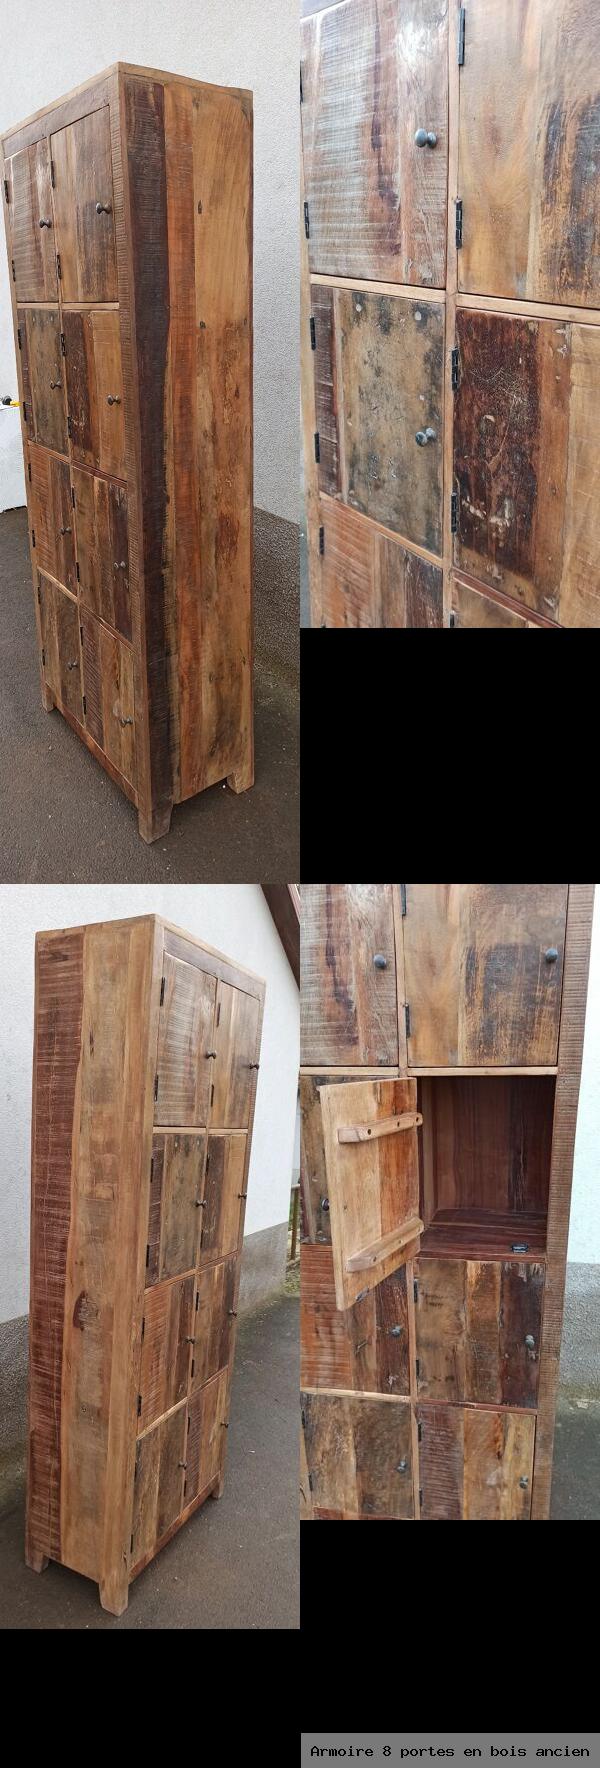 Armoire 8 portes en bois ancien